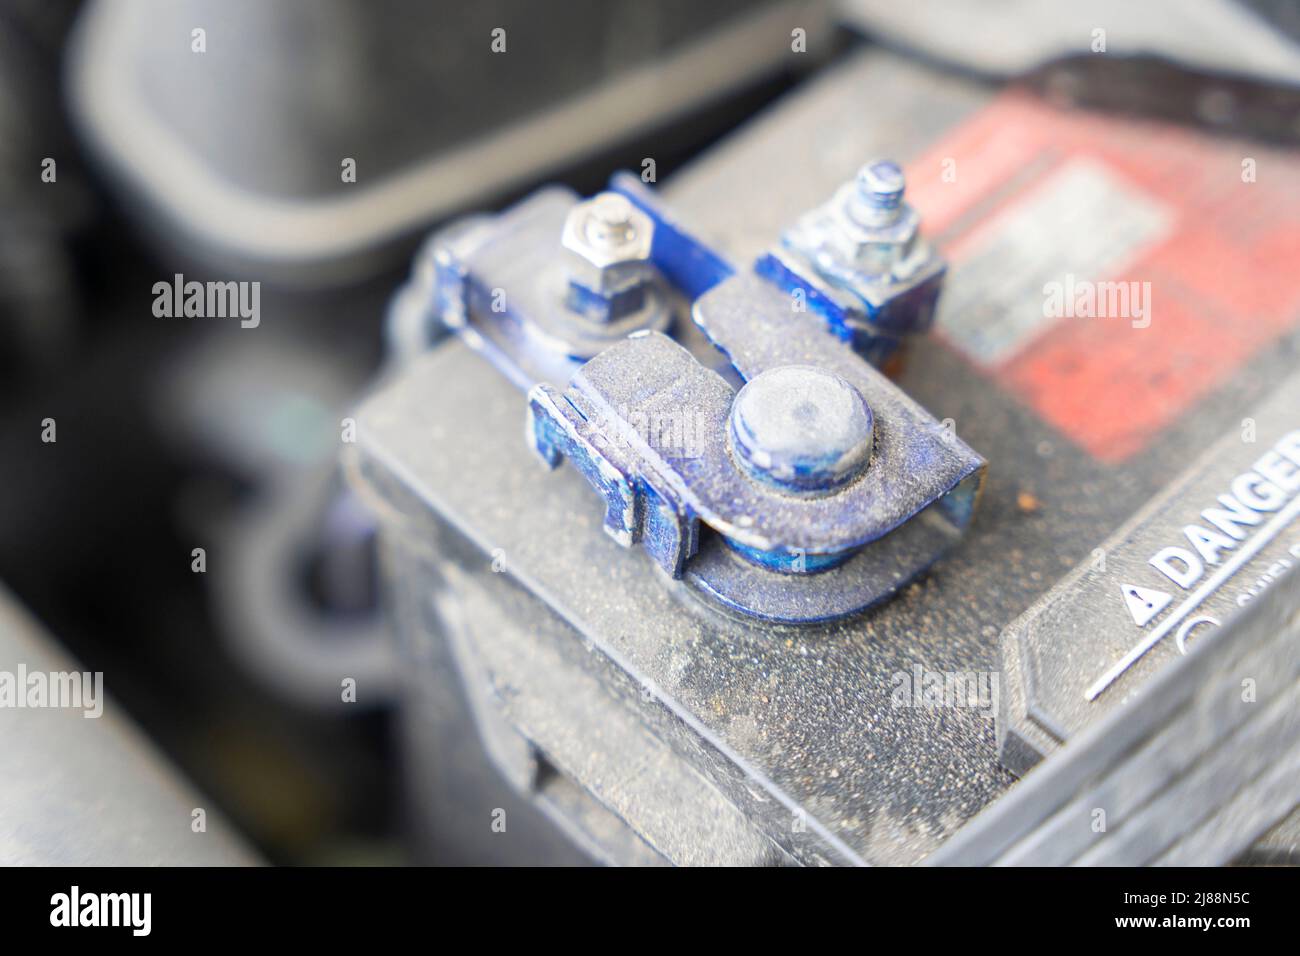 Batterie klemmen in den leeren Wagen Druckspeicher verbunden, während es  voll aufgeladen mit Ladegerät Stockfotografie - Alamy